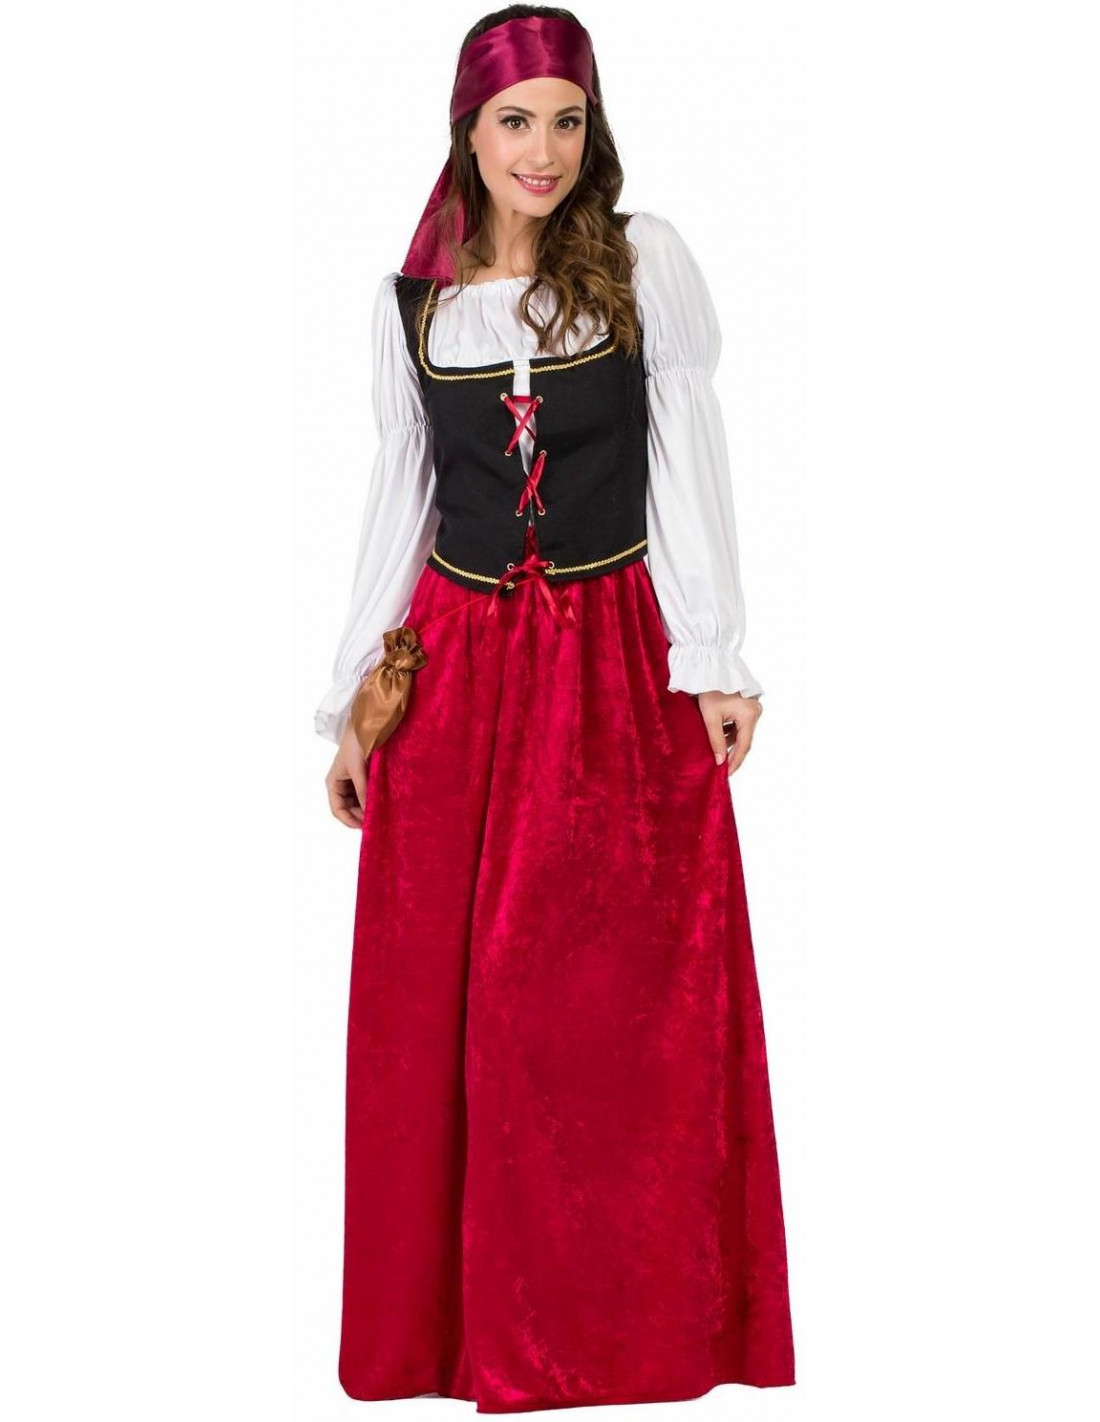 Las mejores ofertas en Falda Roja Navidad disfraces para mujeres